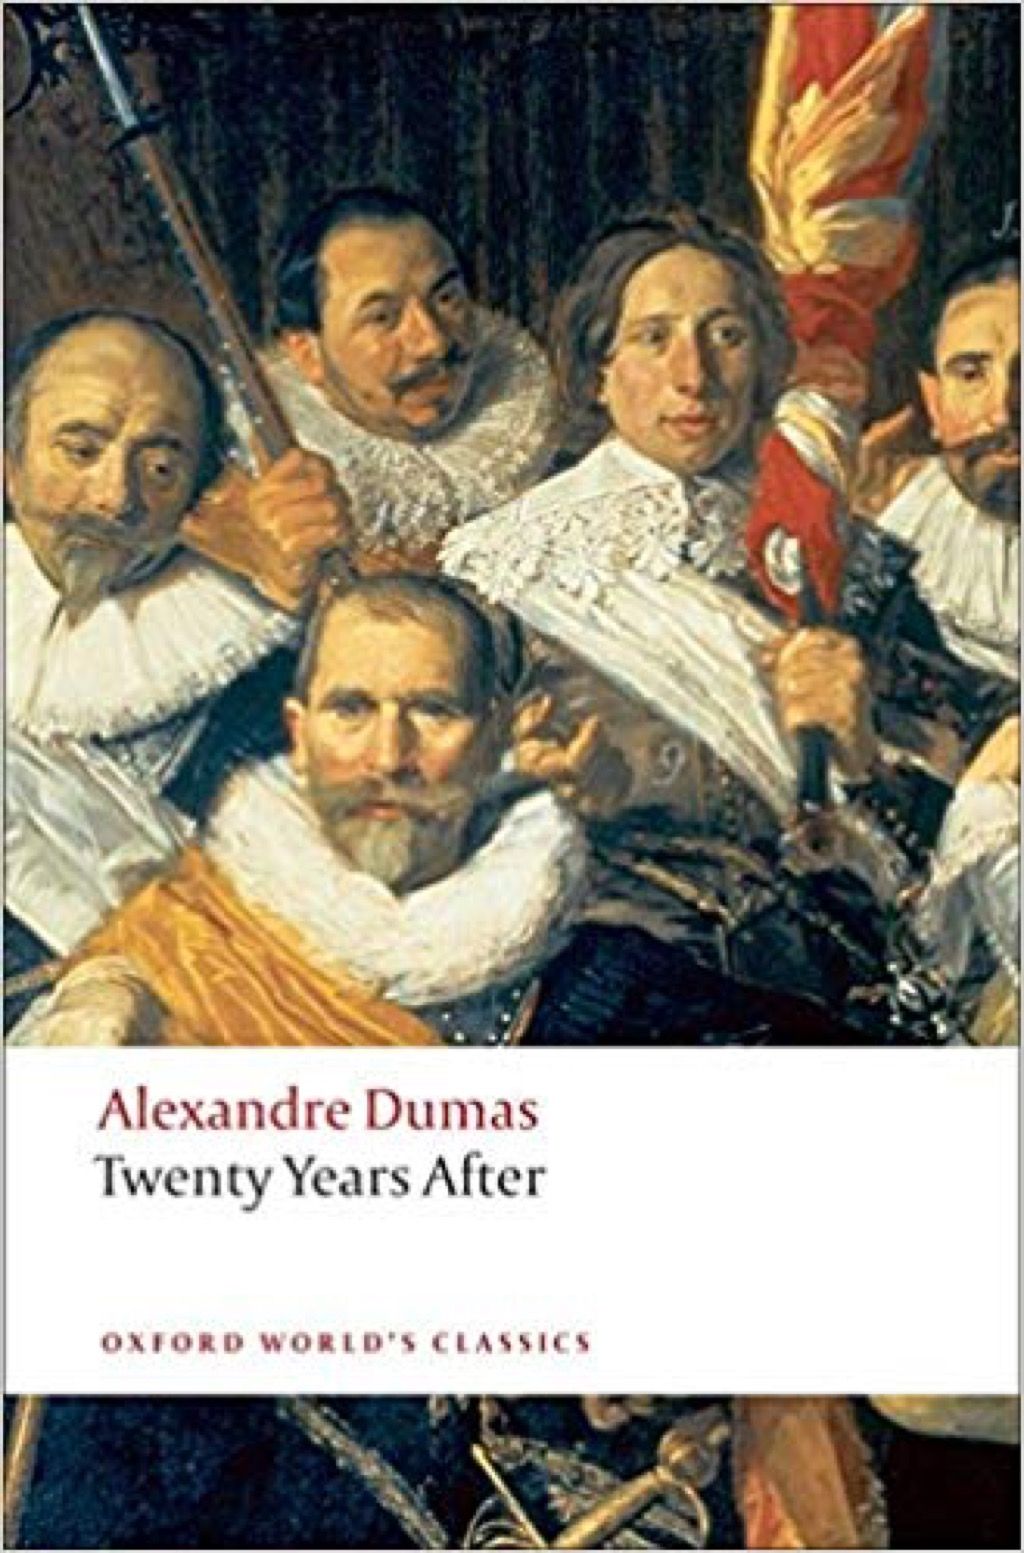 Veinte años después de Alexandre Dumas